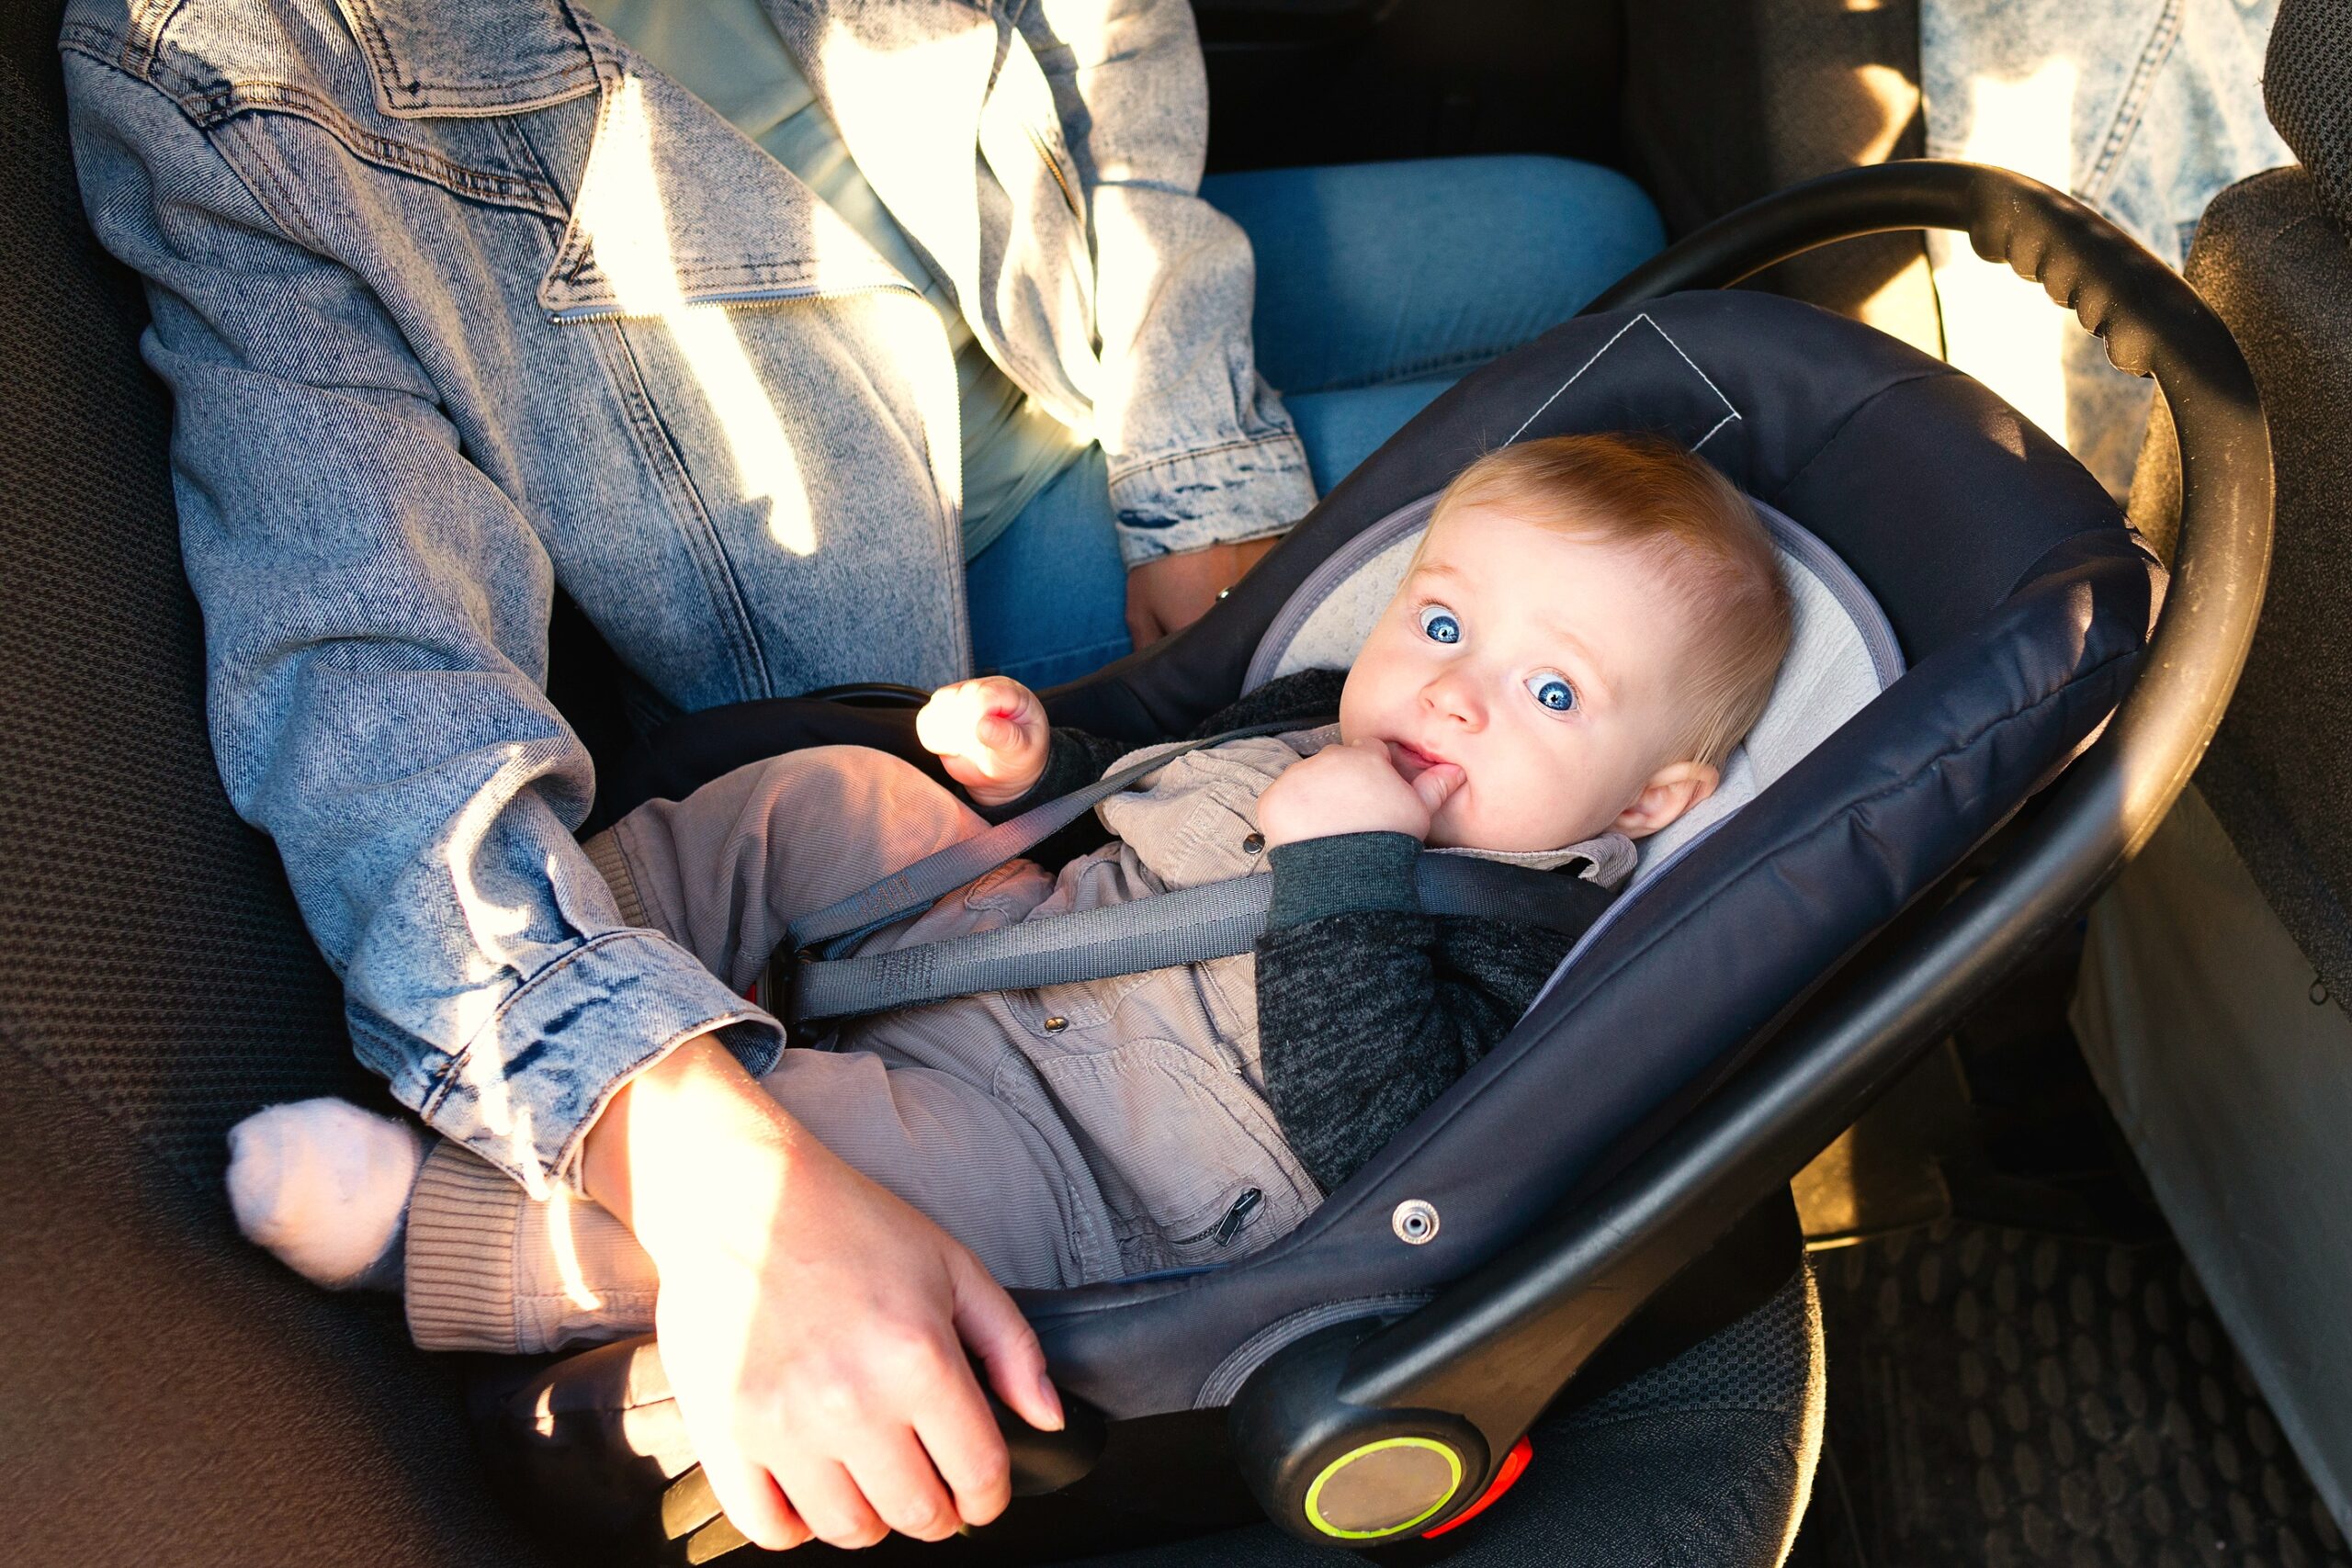 Síndrome del bebé olvidado: Empieza el calor y cualquiera puede olvidar a su bebé en el coche, según un estudio